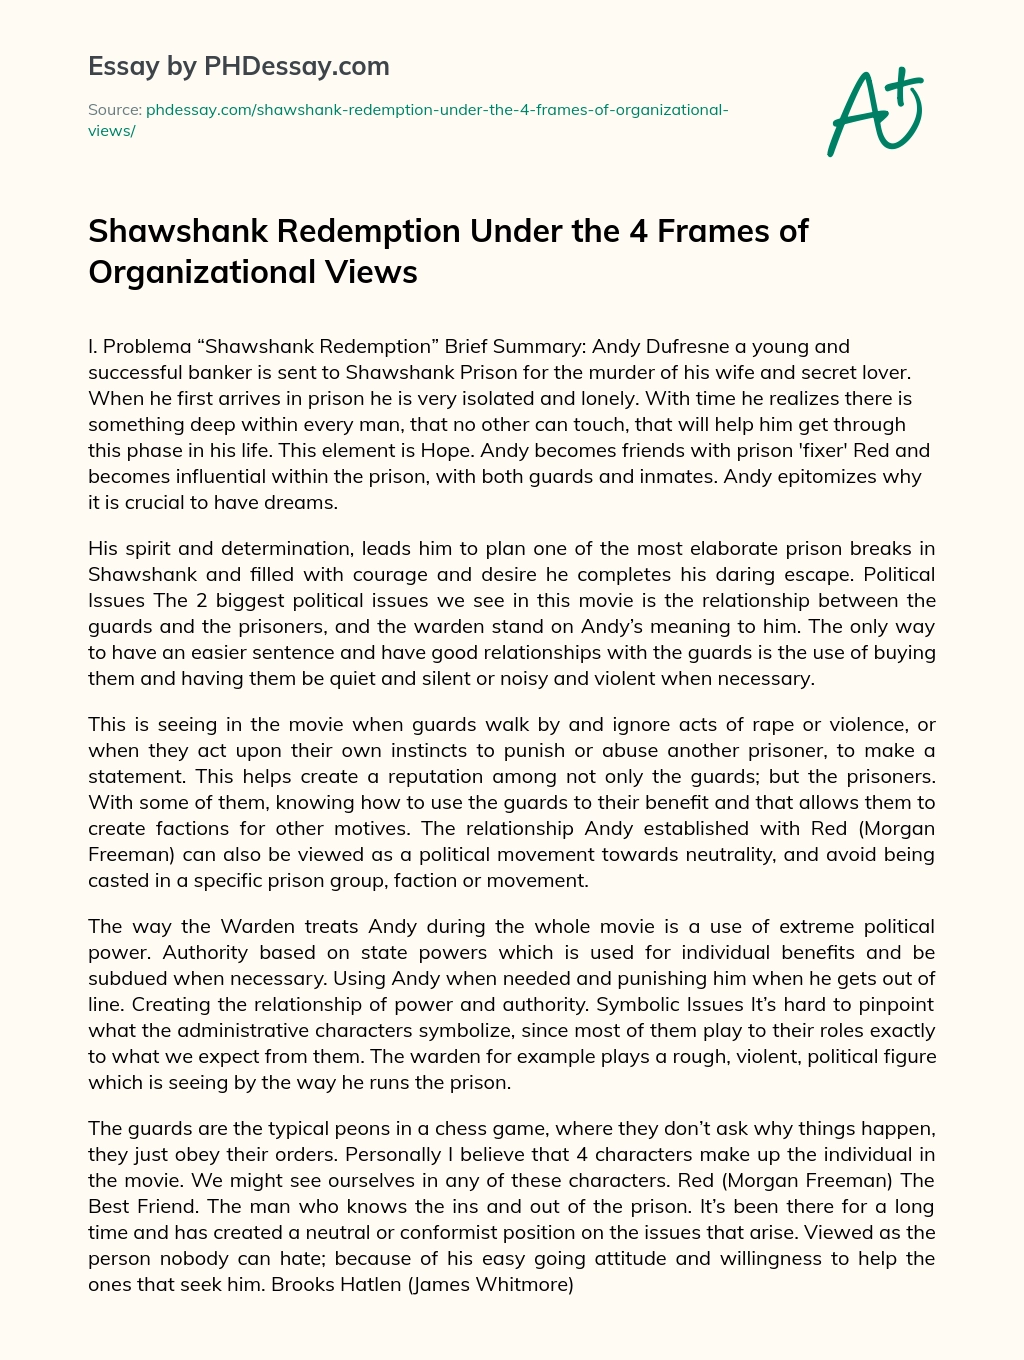 Shawshank Redemption Under the 4 Frames of Organizational Views essay